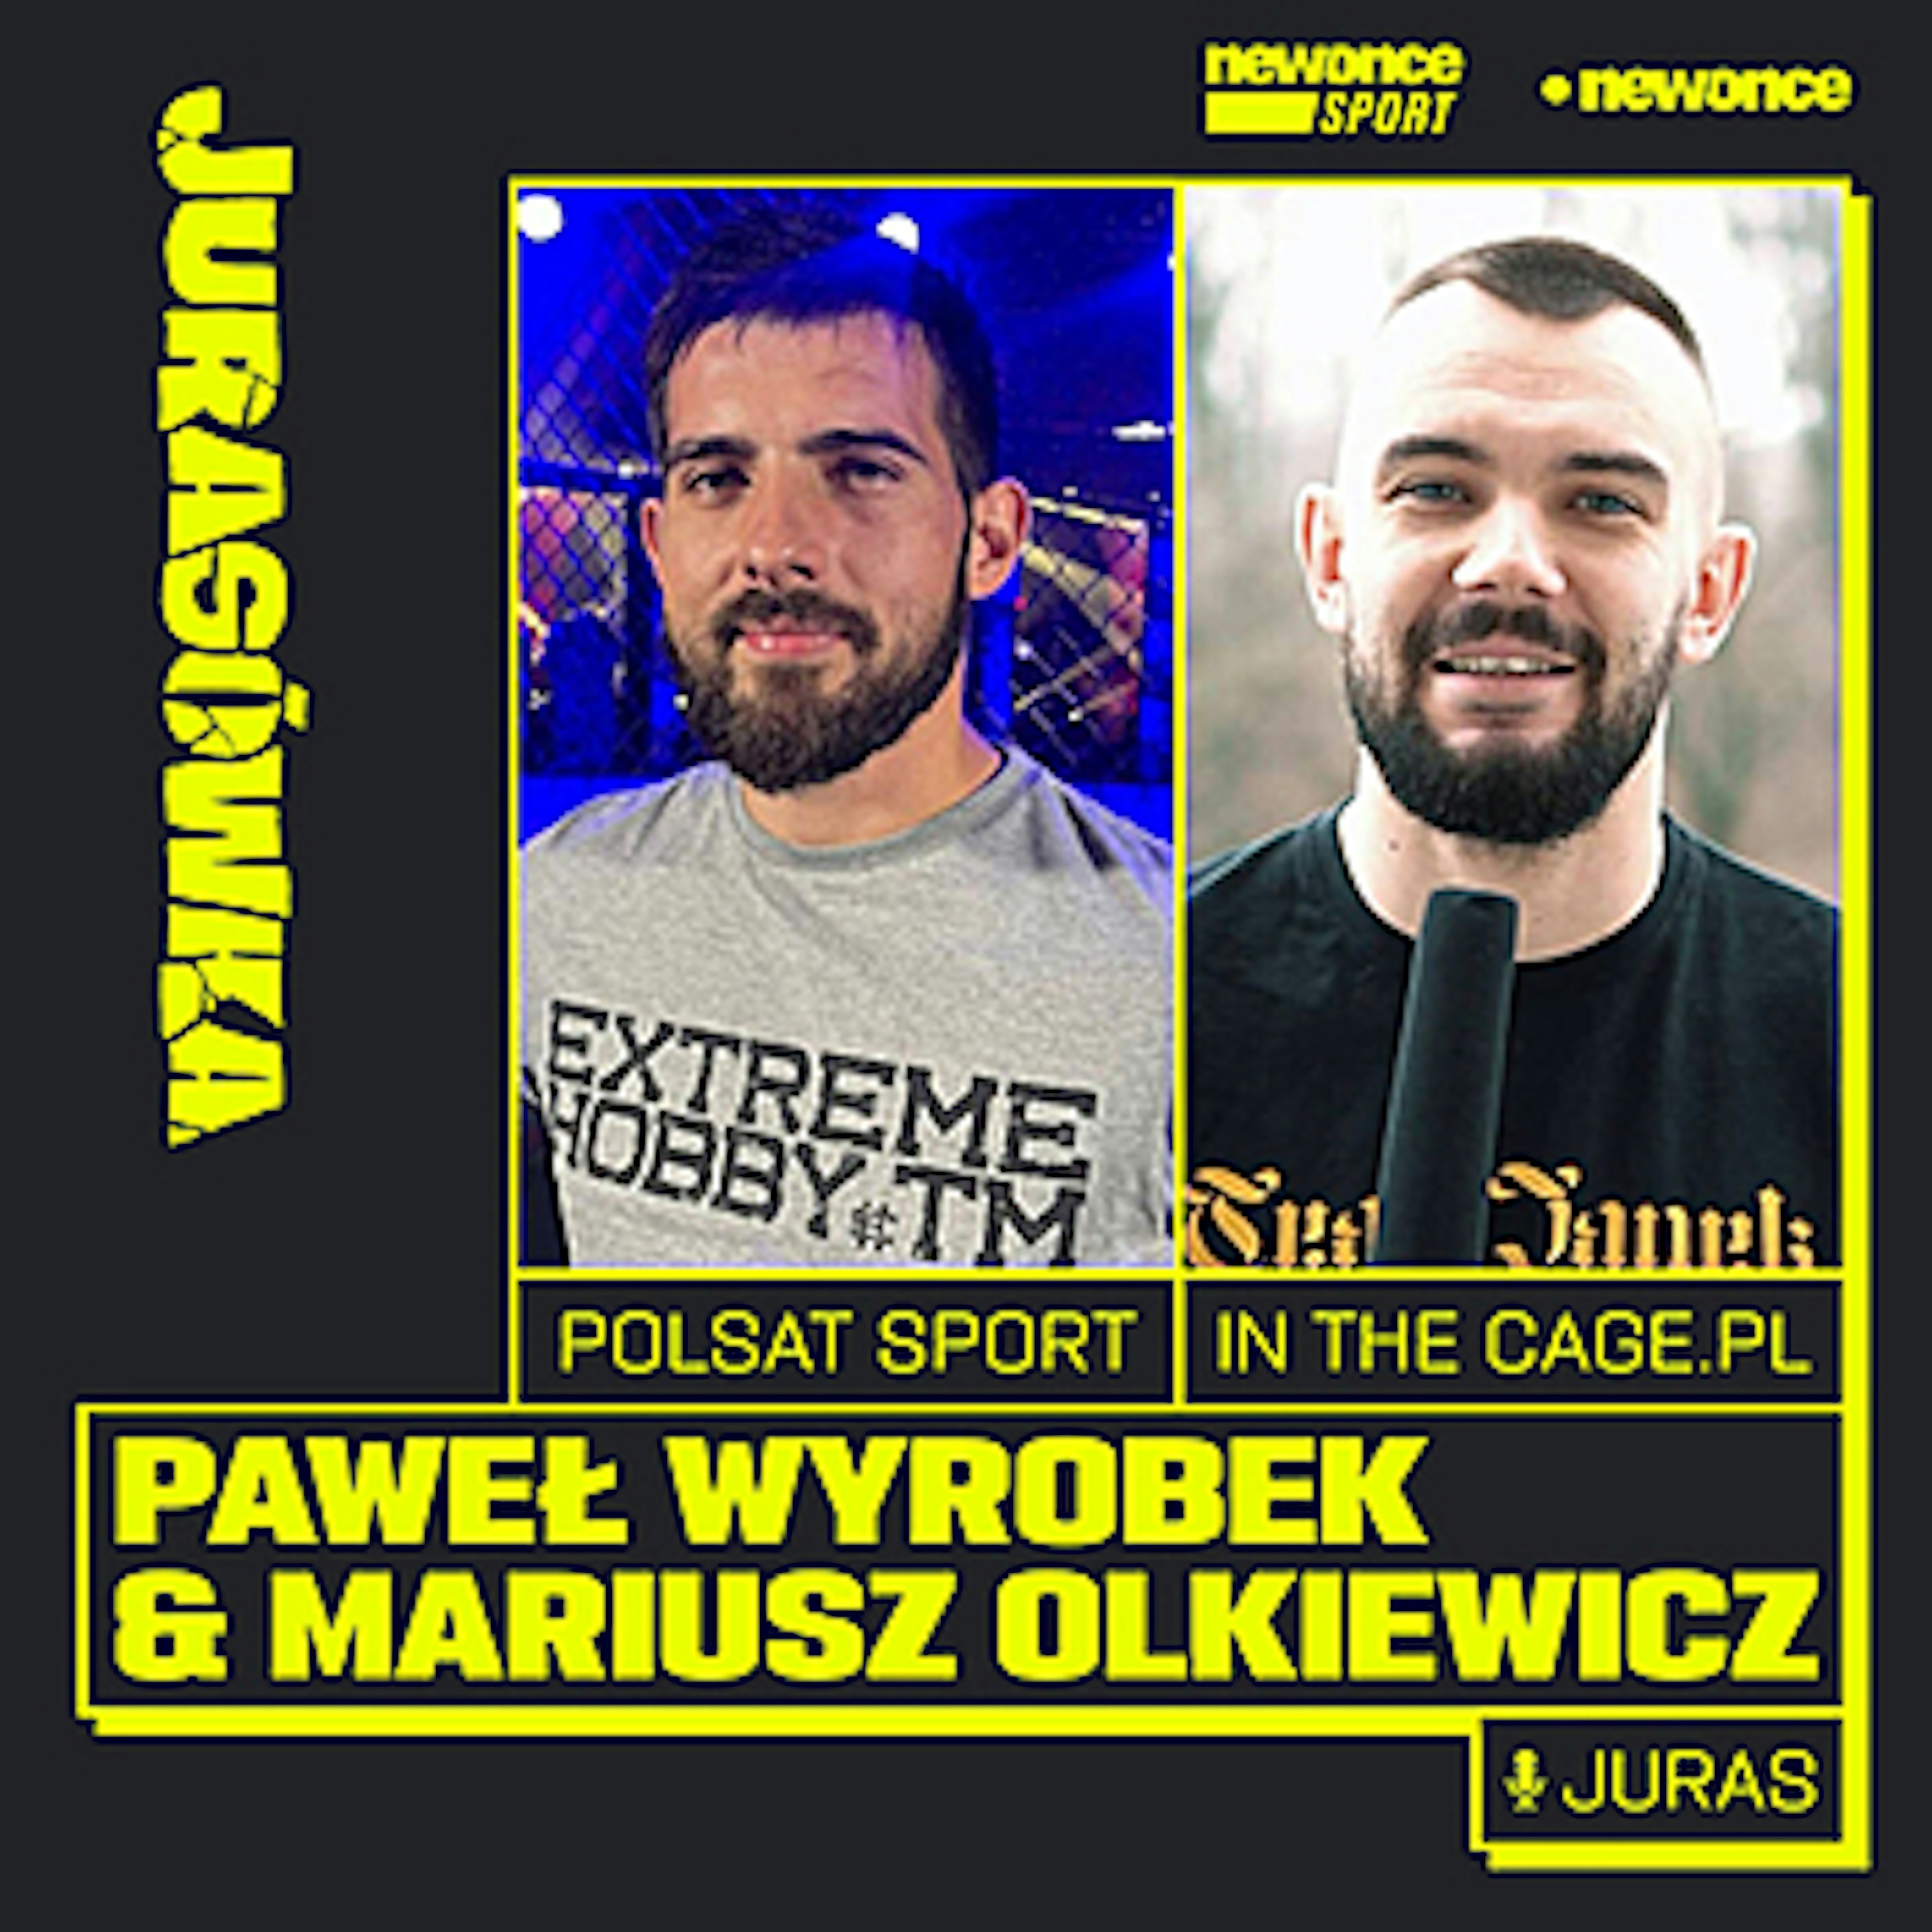 Jurasówka - Co nas czeka na KSW 64.? Paweł Wyrobek & Mariusz Olkiewicz 